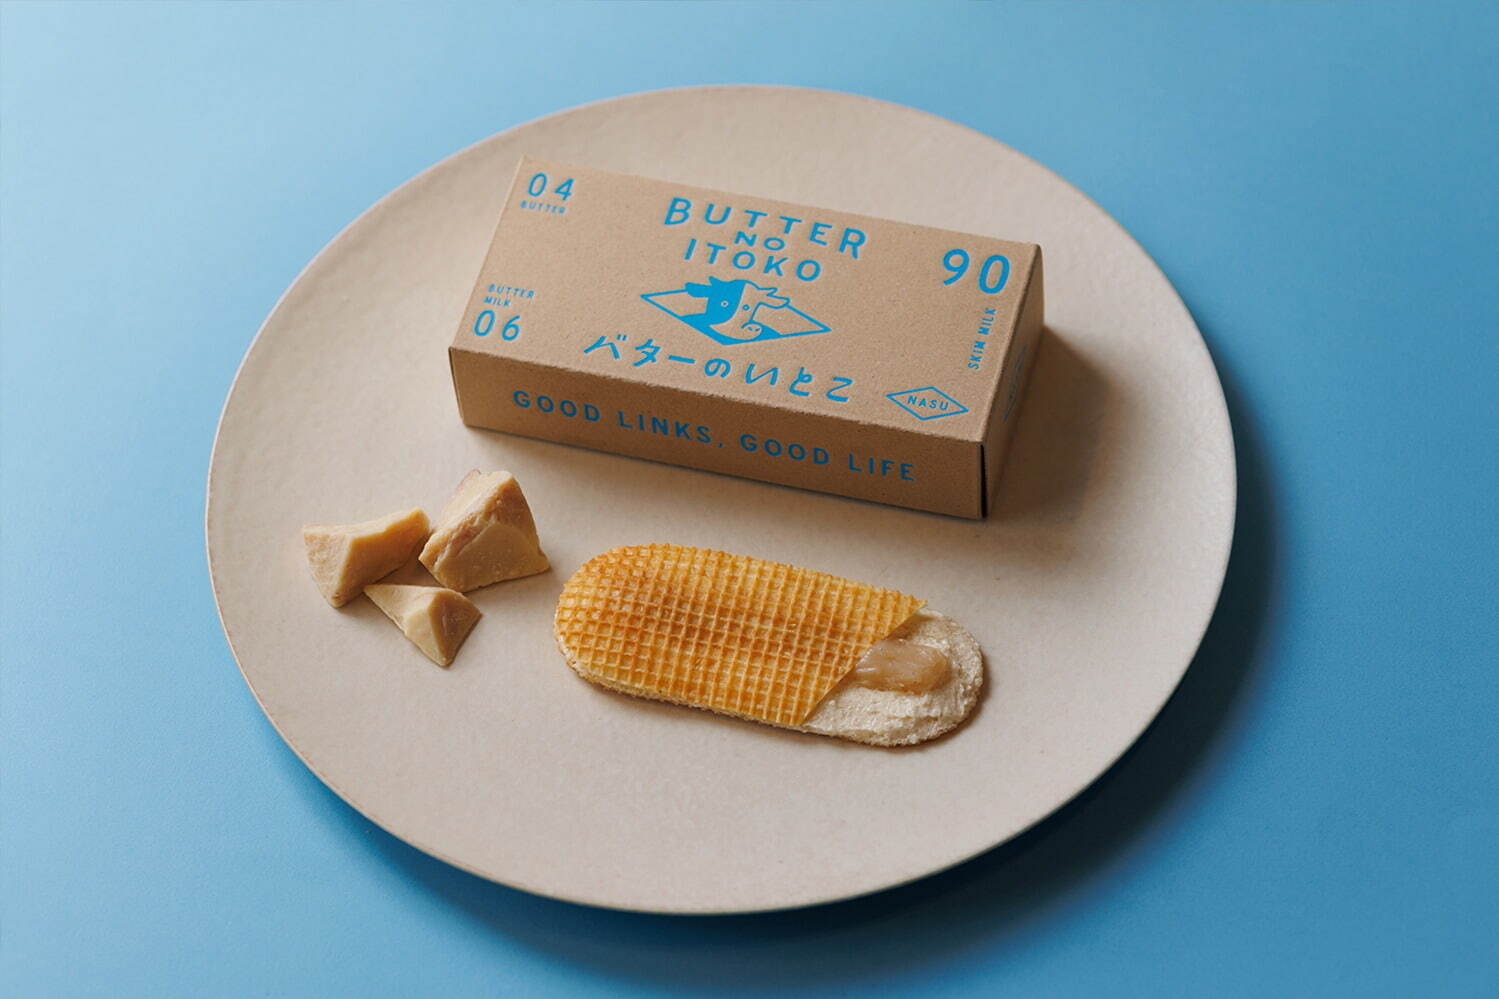 「バターのいとこ ホワイトチョコ」972円 ※数量限定